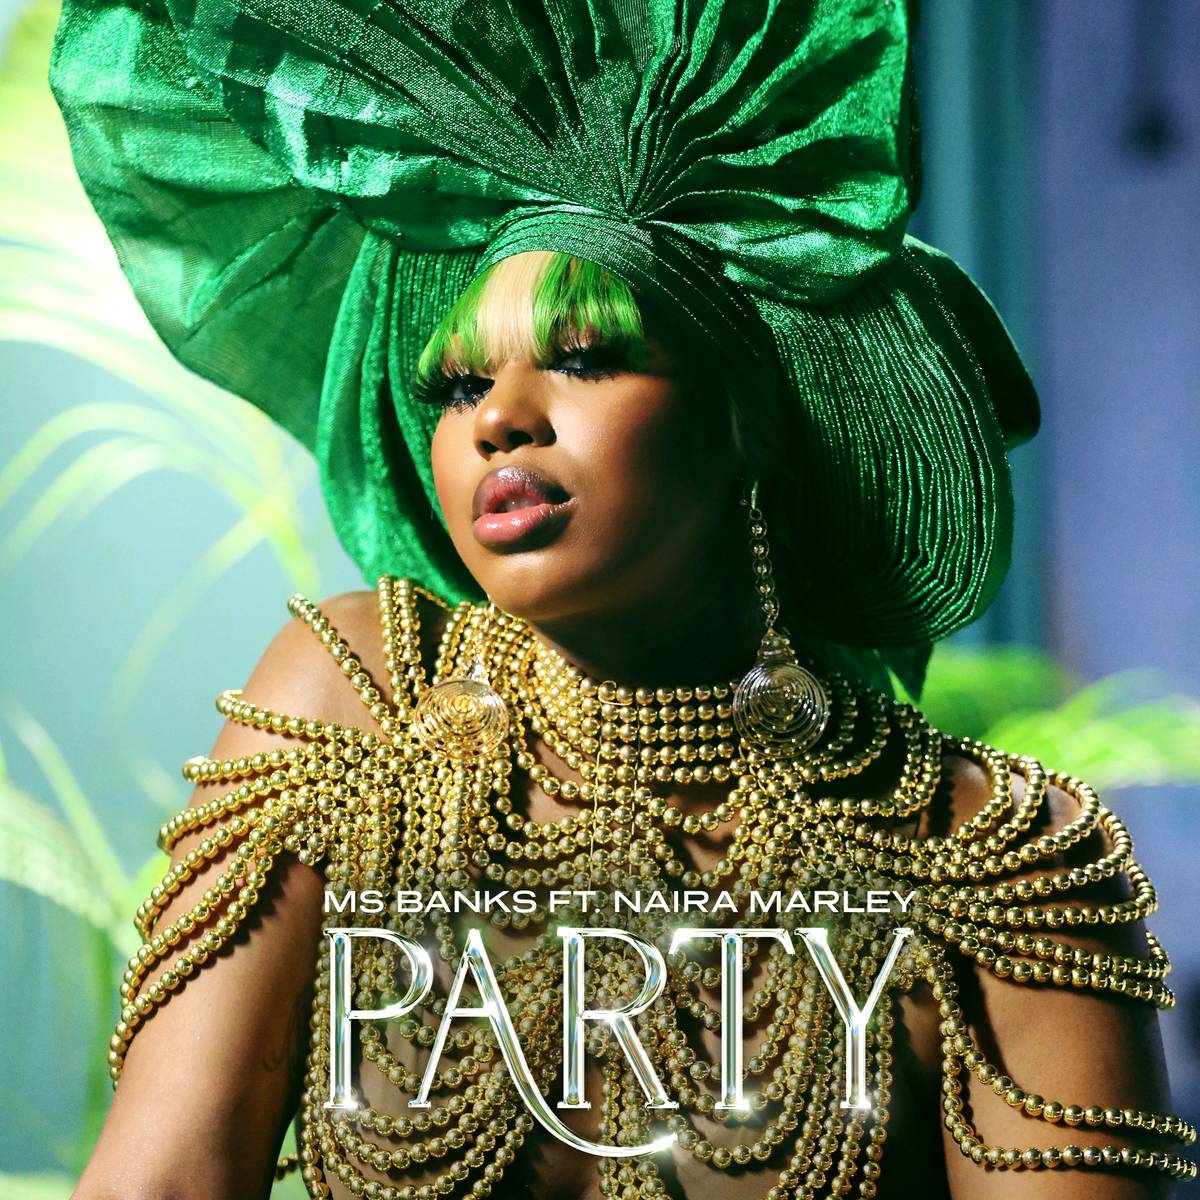 Ms Banks ft. Naira Narley - Party